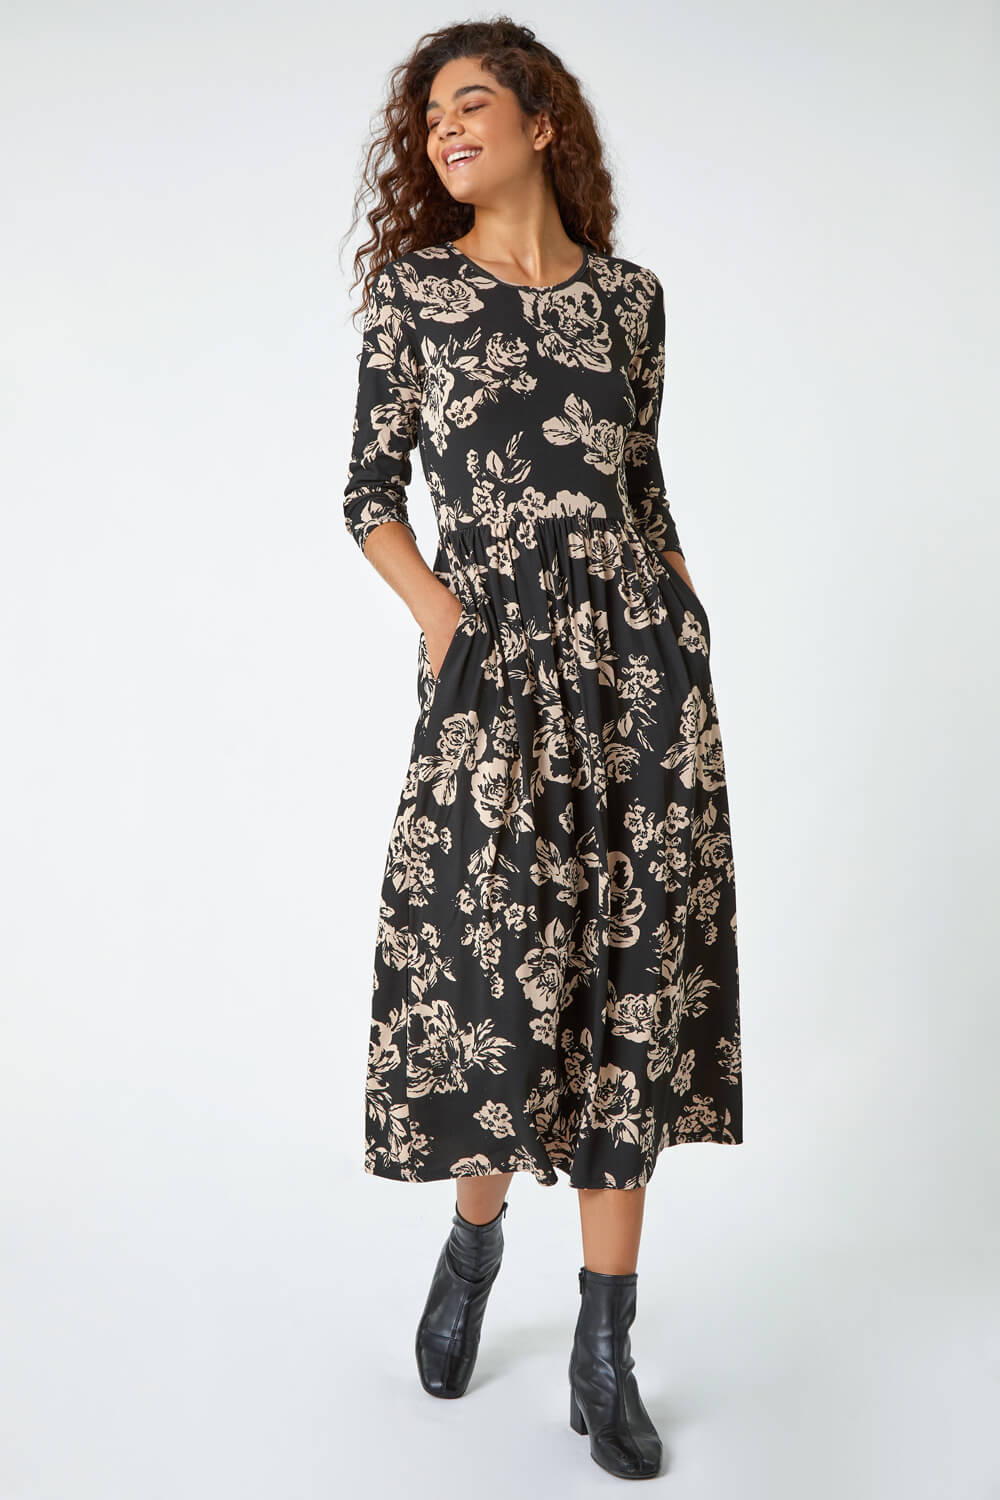 Black Floral Pocket Stretch Midi Dress, Image 2 of 5